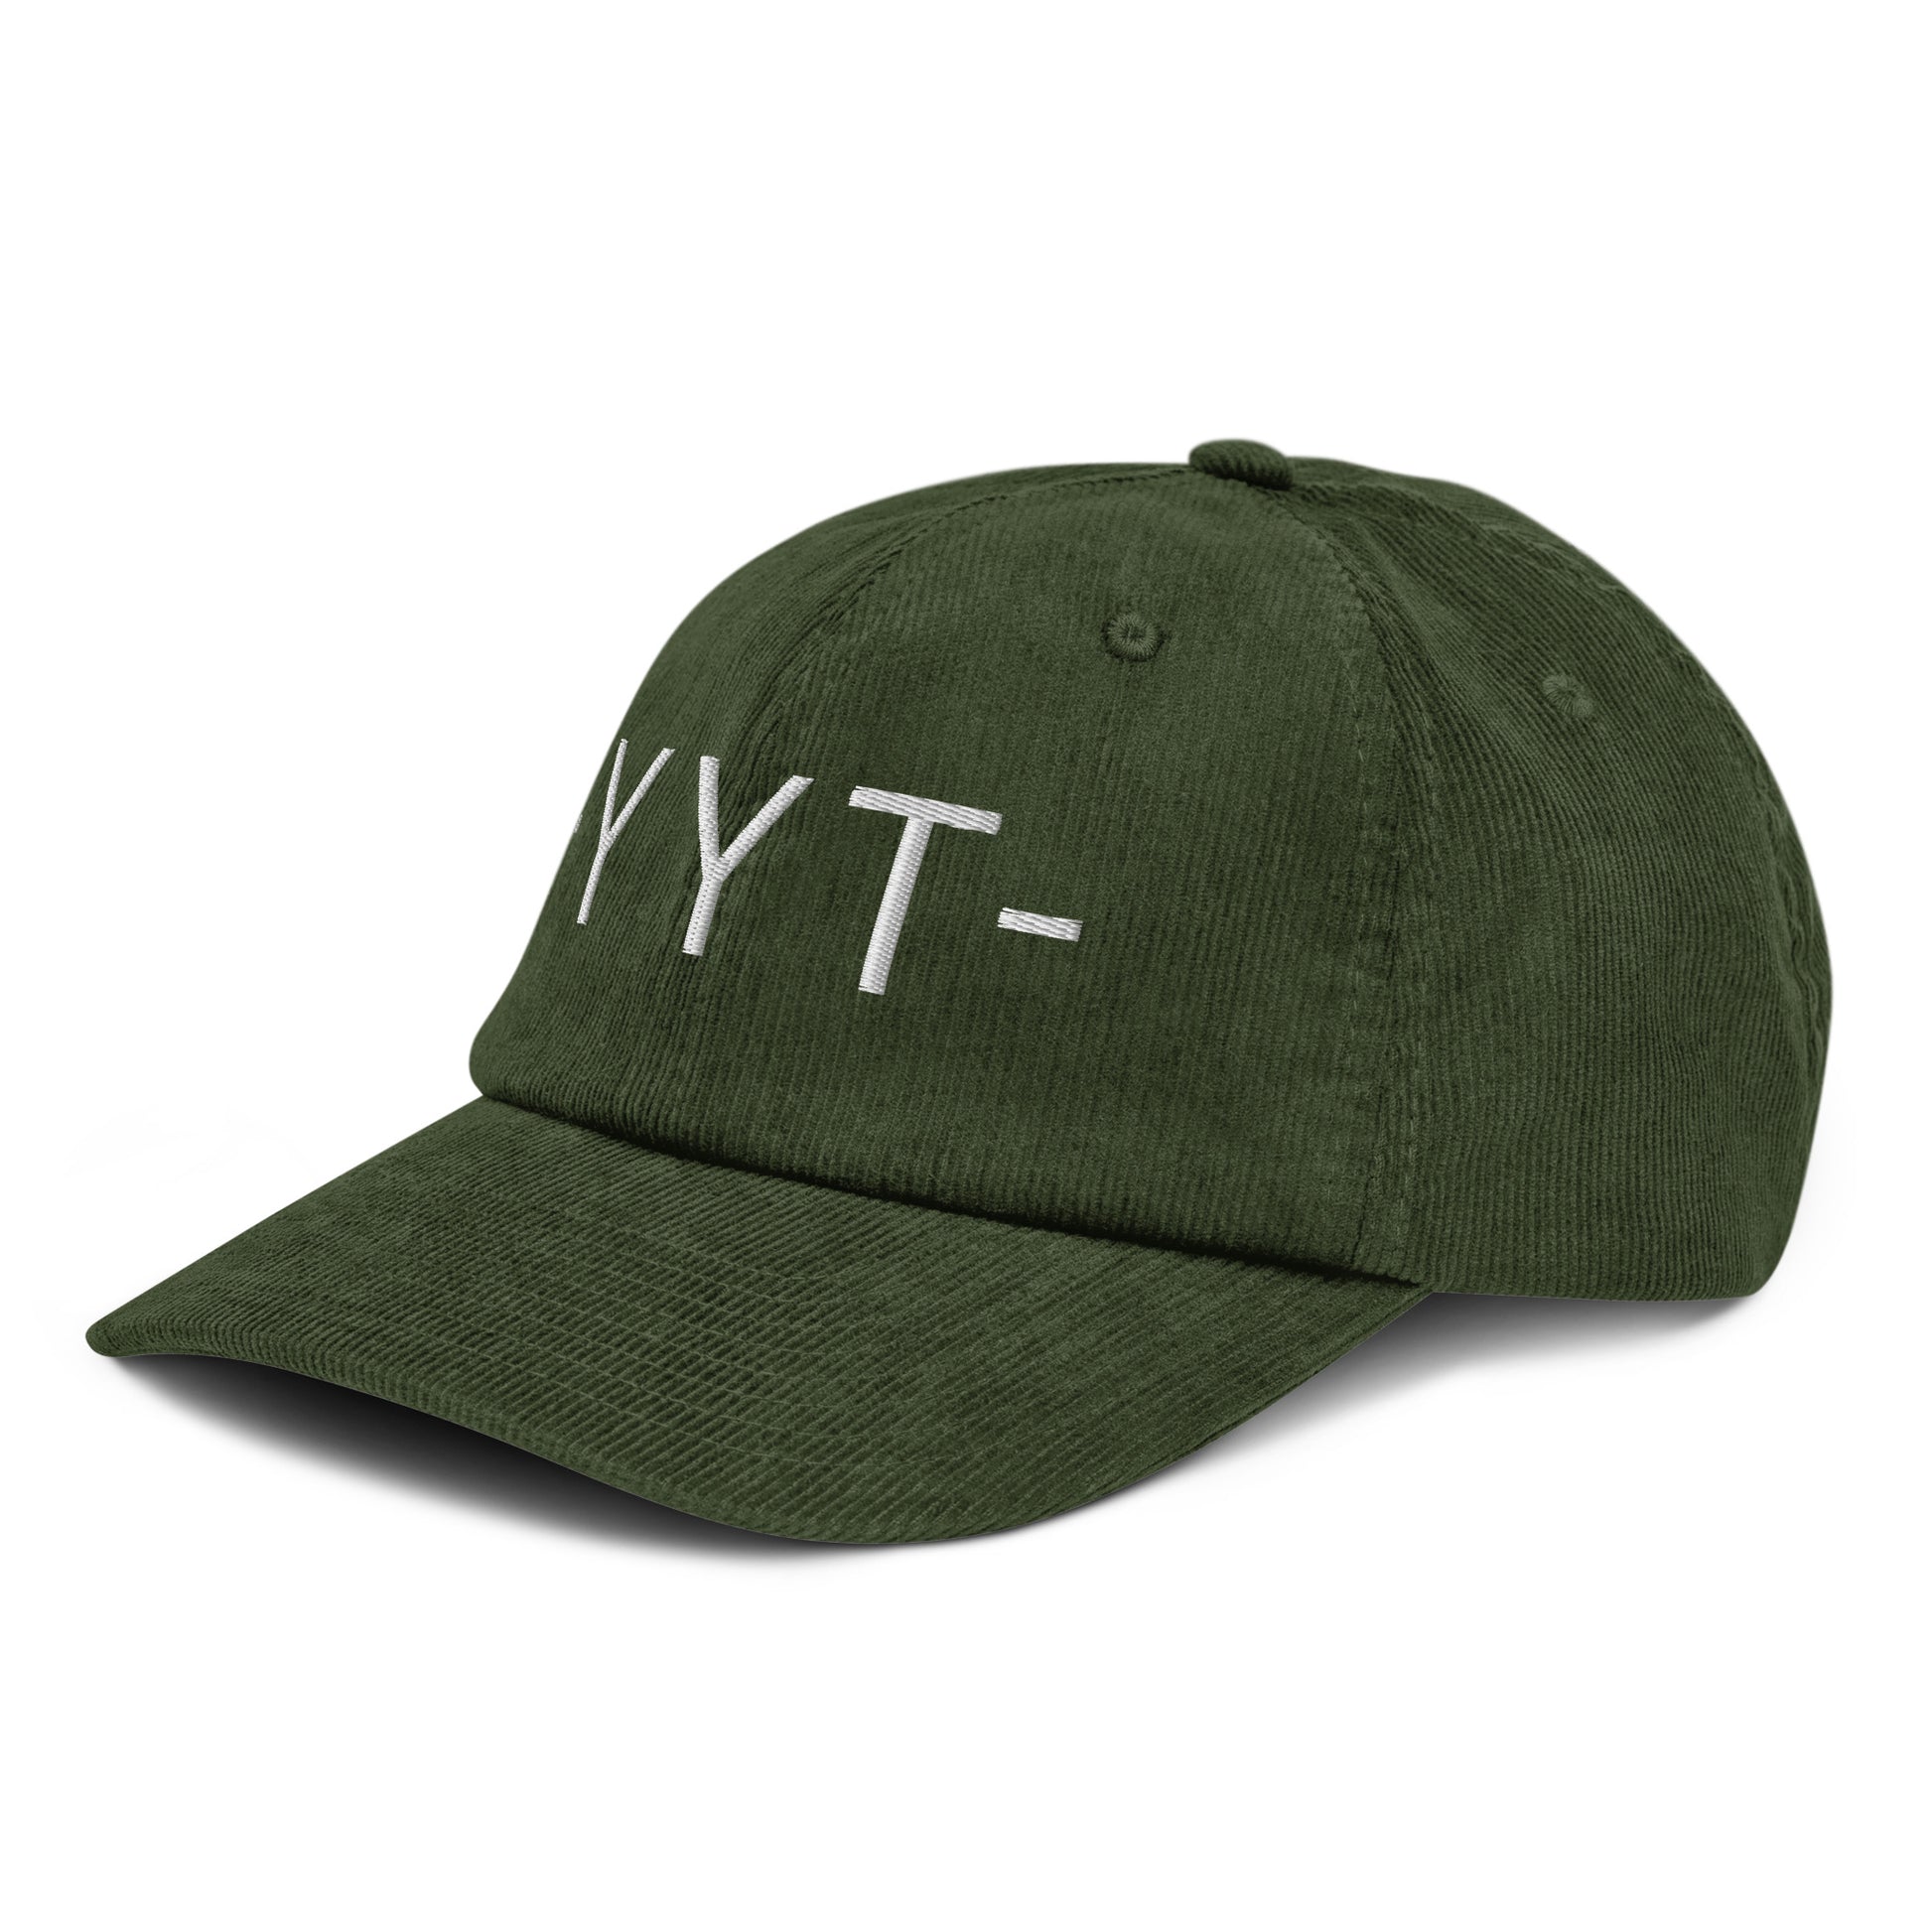 Souvenir Corduroy Hat - White • YYT St. John's • YHM Designs - Image 17